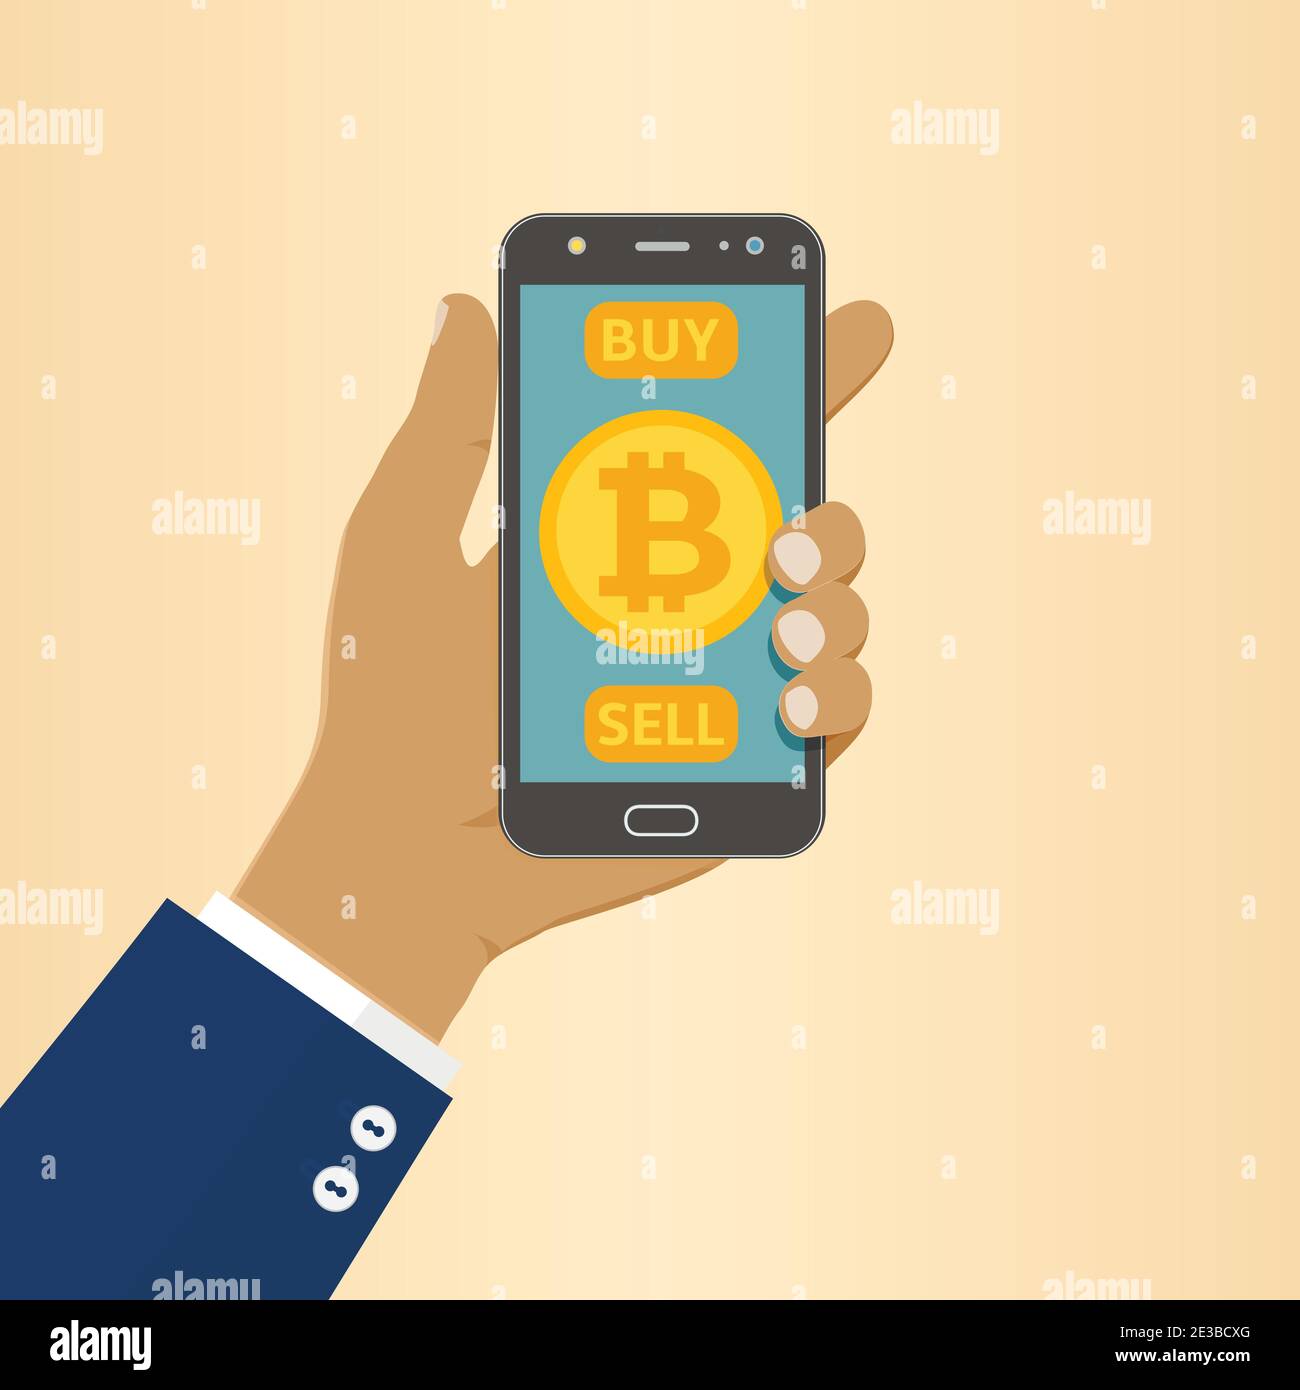 Un homme d'affaires afro-américain tient un téléphone avec le symbole Bitcoin sur l'écran de l'application mobile avec DES boutons D'ACHAT et DE VENTE. Illustration vectorielle plate. Illustration de Vecteur